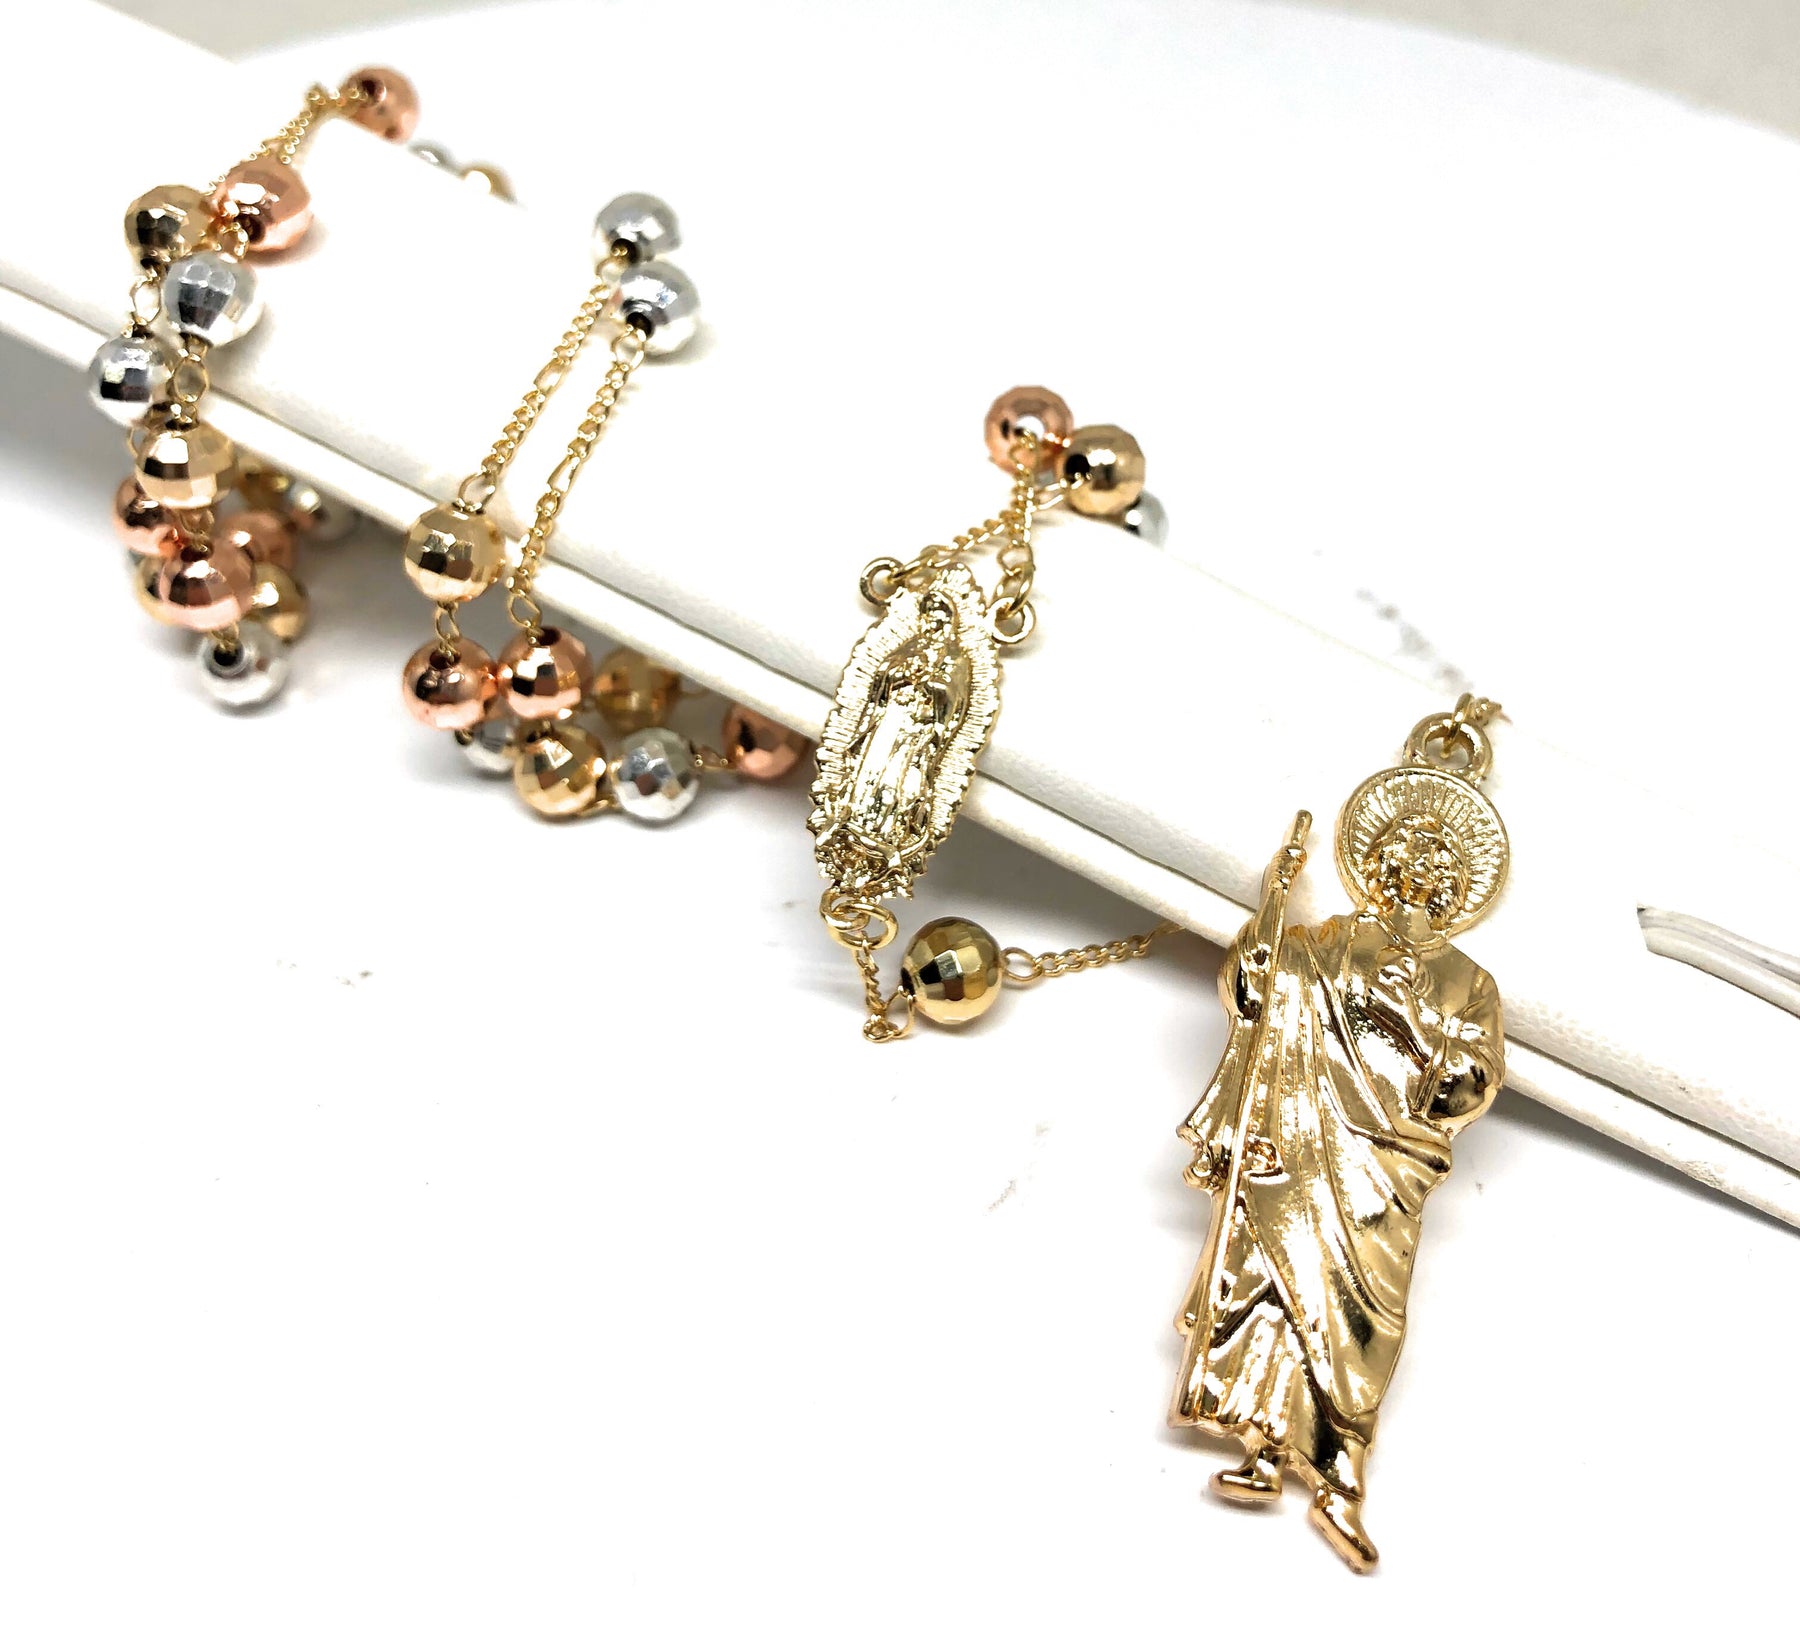 14K Gold Filled Virgen de Guadalupe Earrings Screw Back CZ Stones 10x10mm /  Women's Earrings / Aretes de Guadalupe en Oro Laminado Para Mujer 